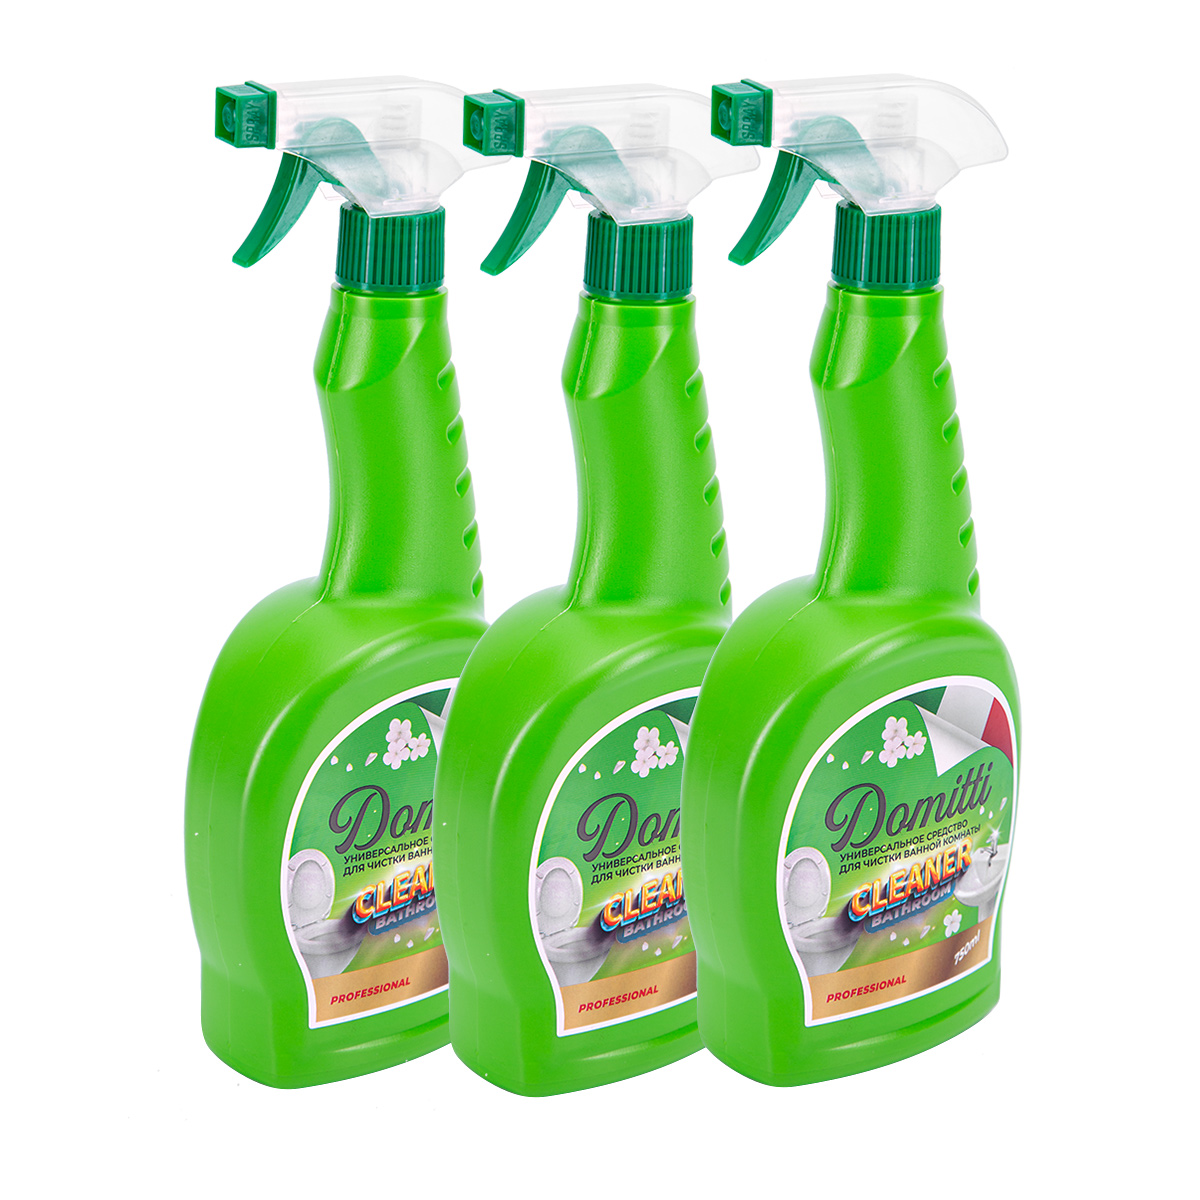 VK_Универсальное средство для чистки ванной комнаты Domitti (3 шт.), Бытовая химия, Чистящие и моющие средства